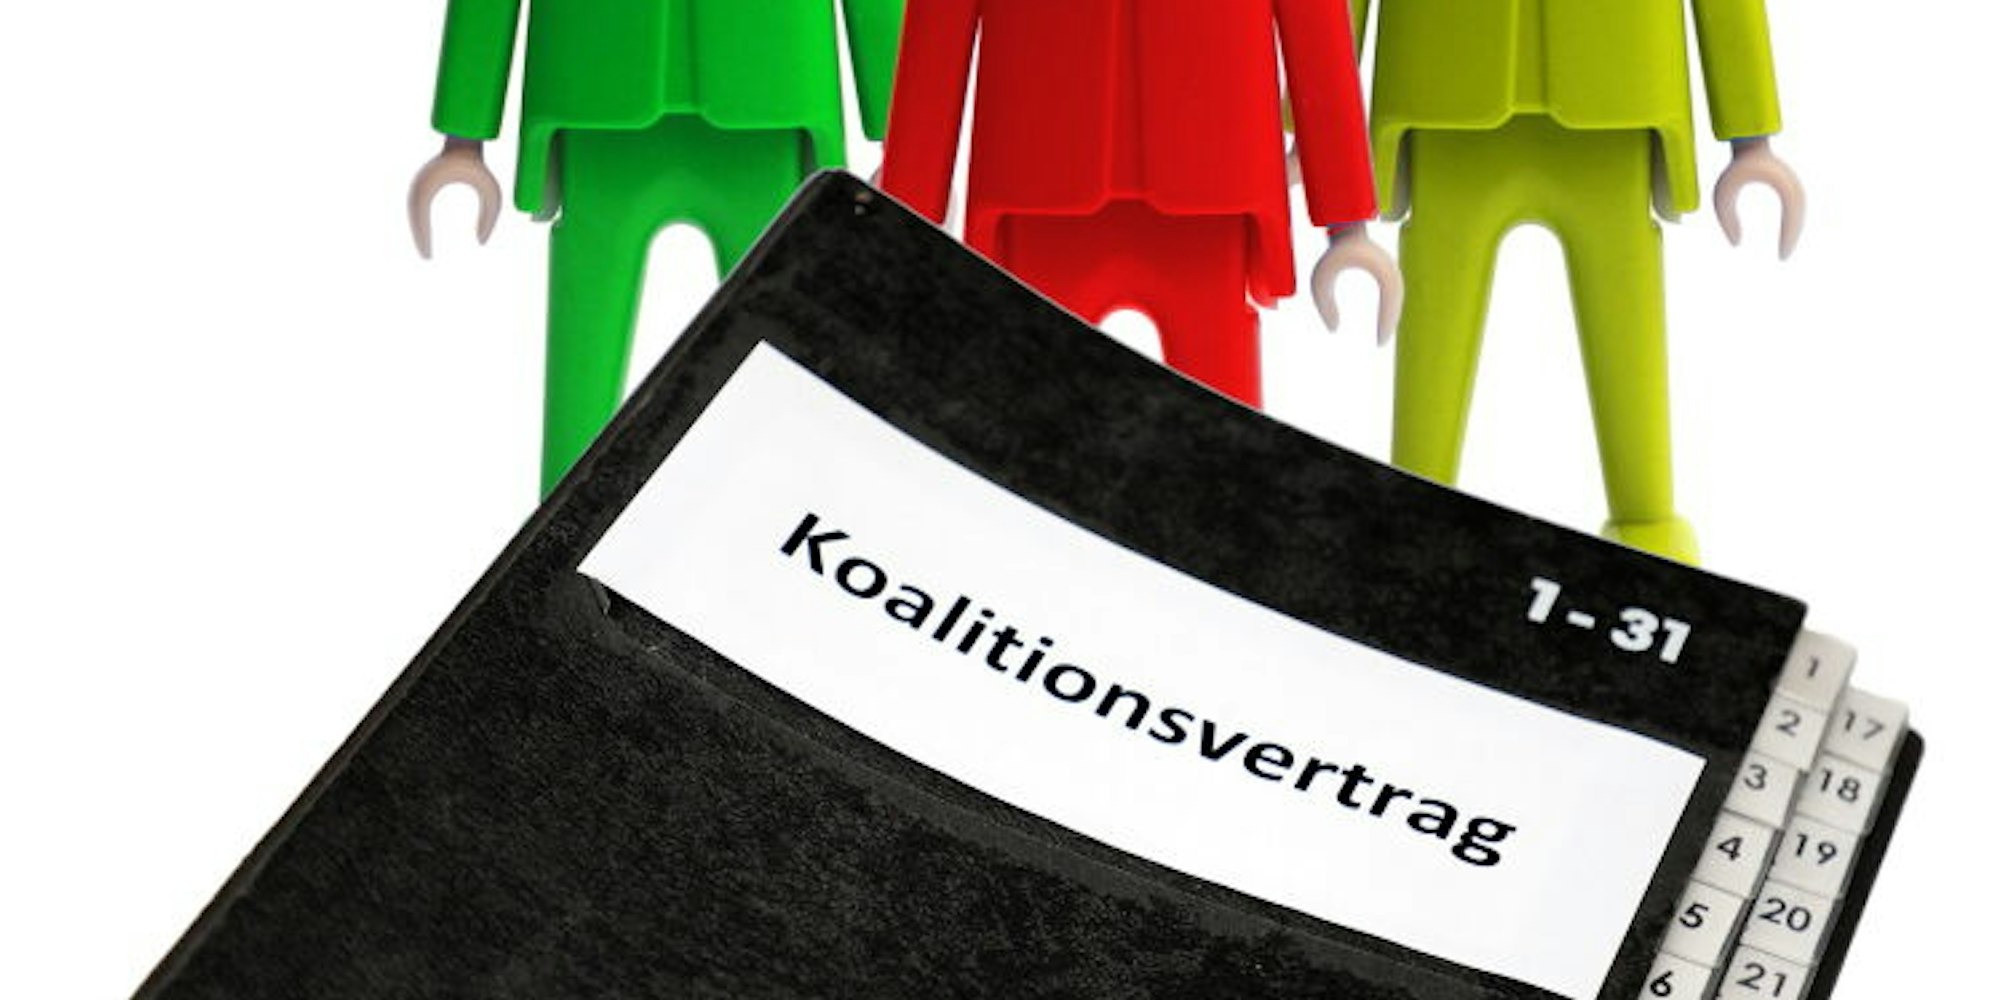 Die Grünen, die Roten (SPD) und die Gelben (FDP) haben einen Koalitionsvertrag ausgearbeitet. Jetzt geht es ab der morgigen Ratssitzung um die Umsetzung.